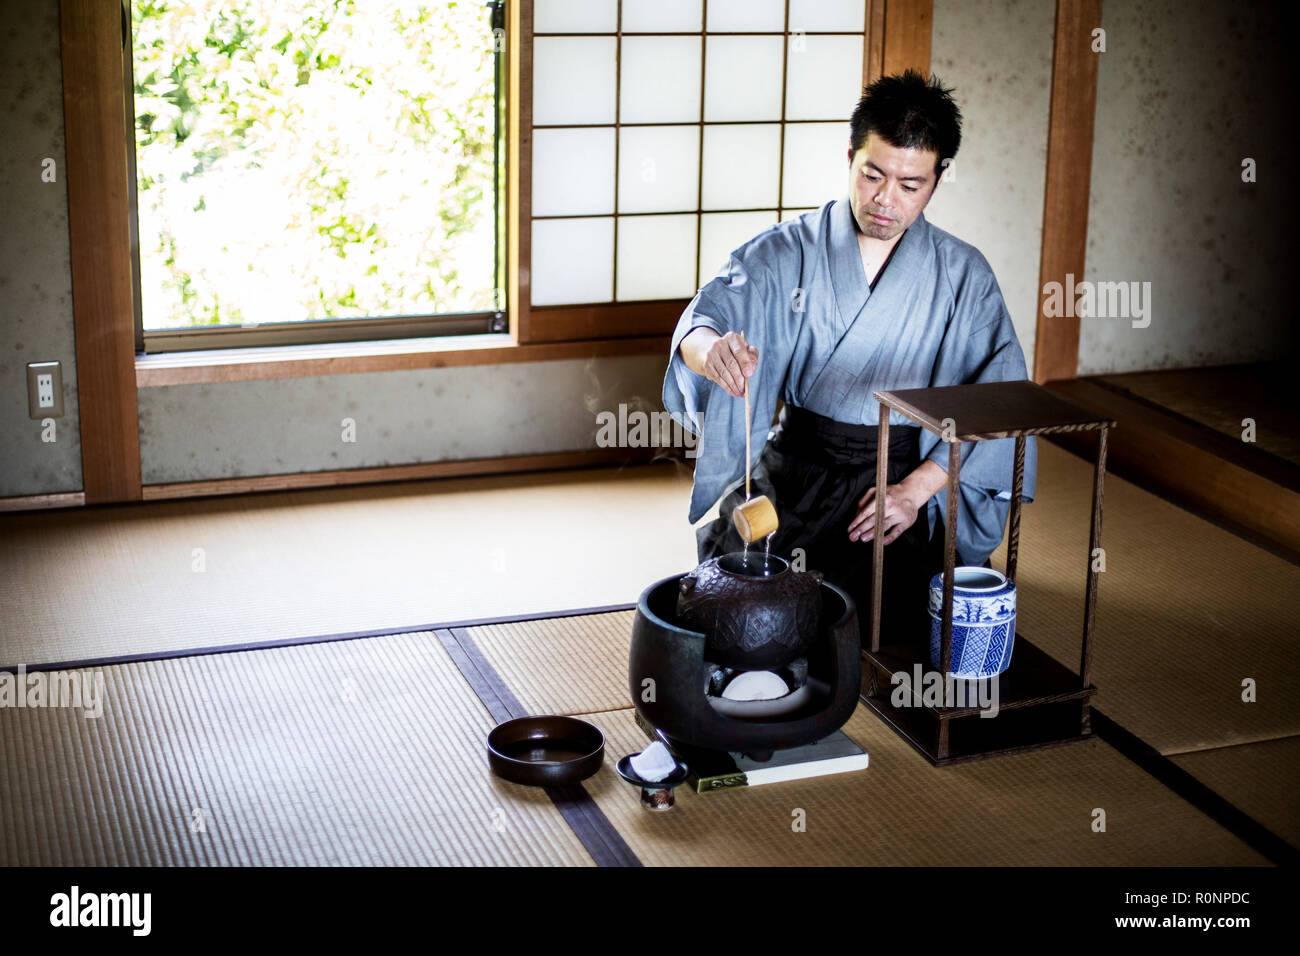 La cérémonie du thé japonaise traditionnelle, l'homme portant un kimono assis sur les tatamis à l'aide d'une louche Hishaku, un bambou, de verser de l'eau chaude. Banque D'Images